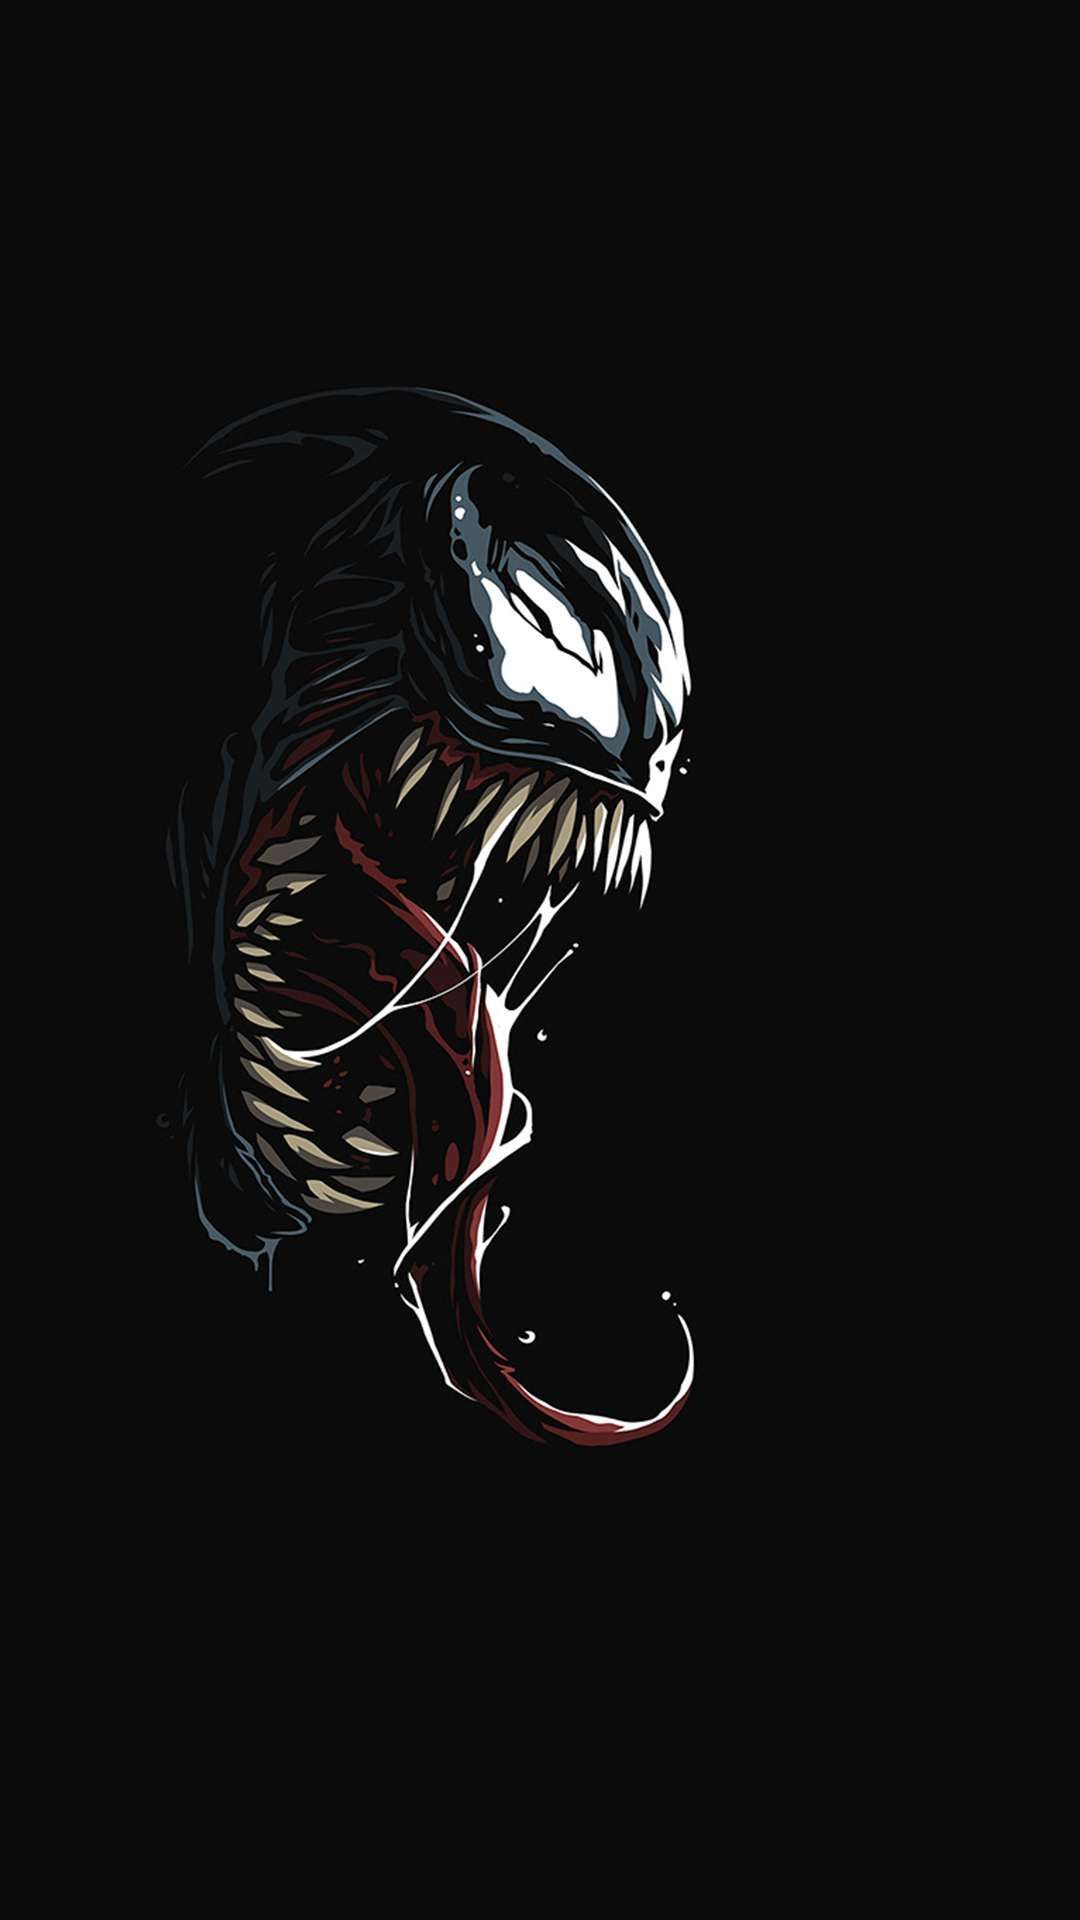 Venom Dark Black Minimal iPhone Wallpaper. Marvel